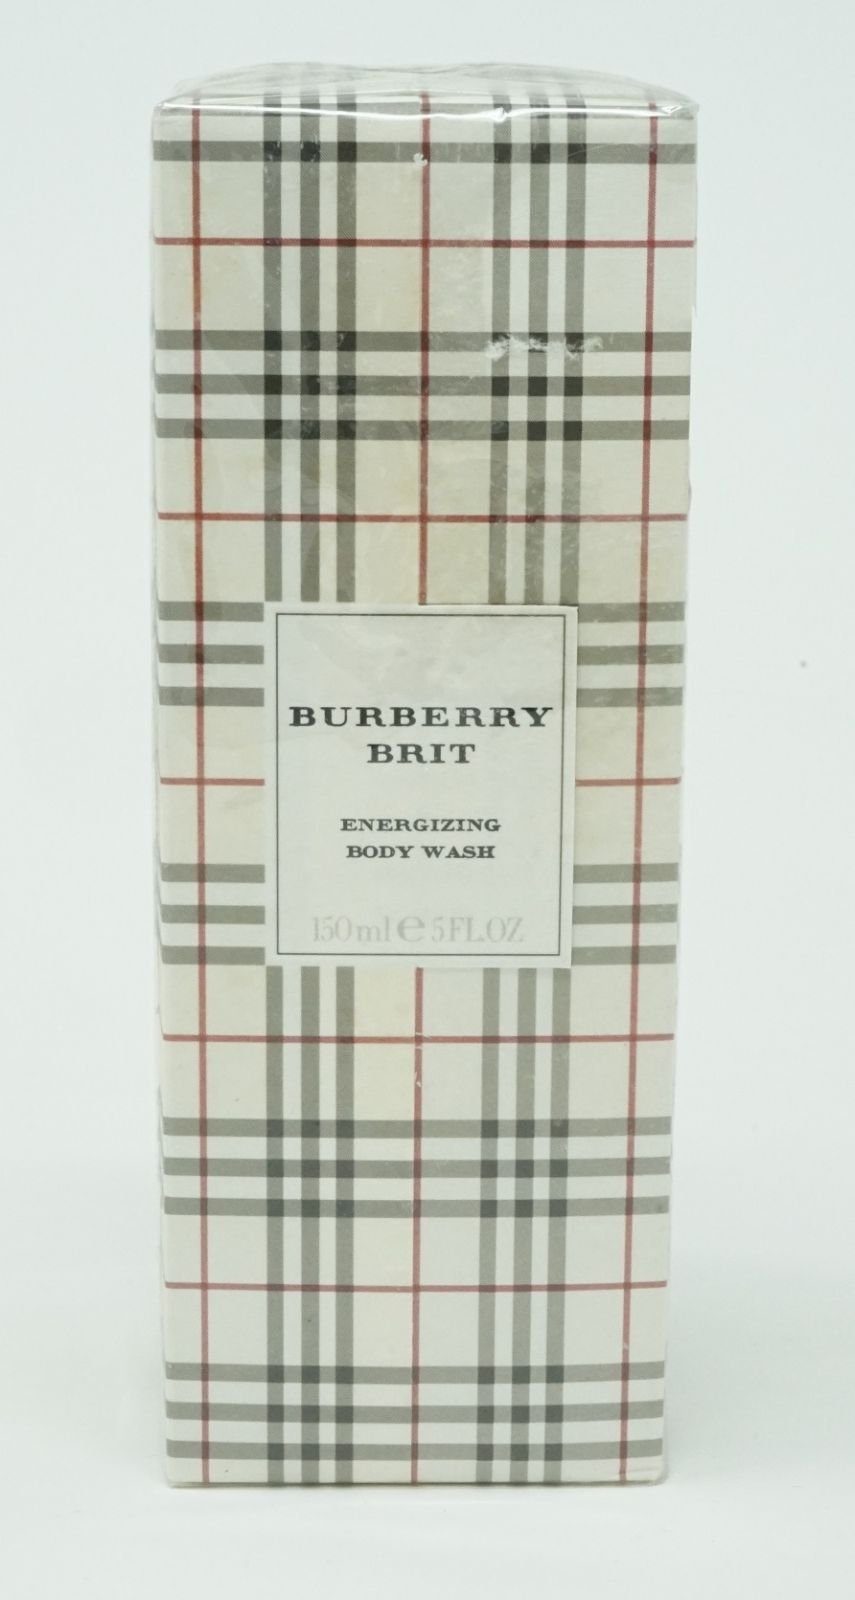 Burberry Duschgele online kaufen | OTTO